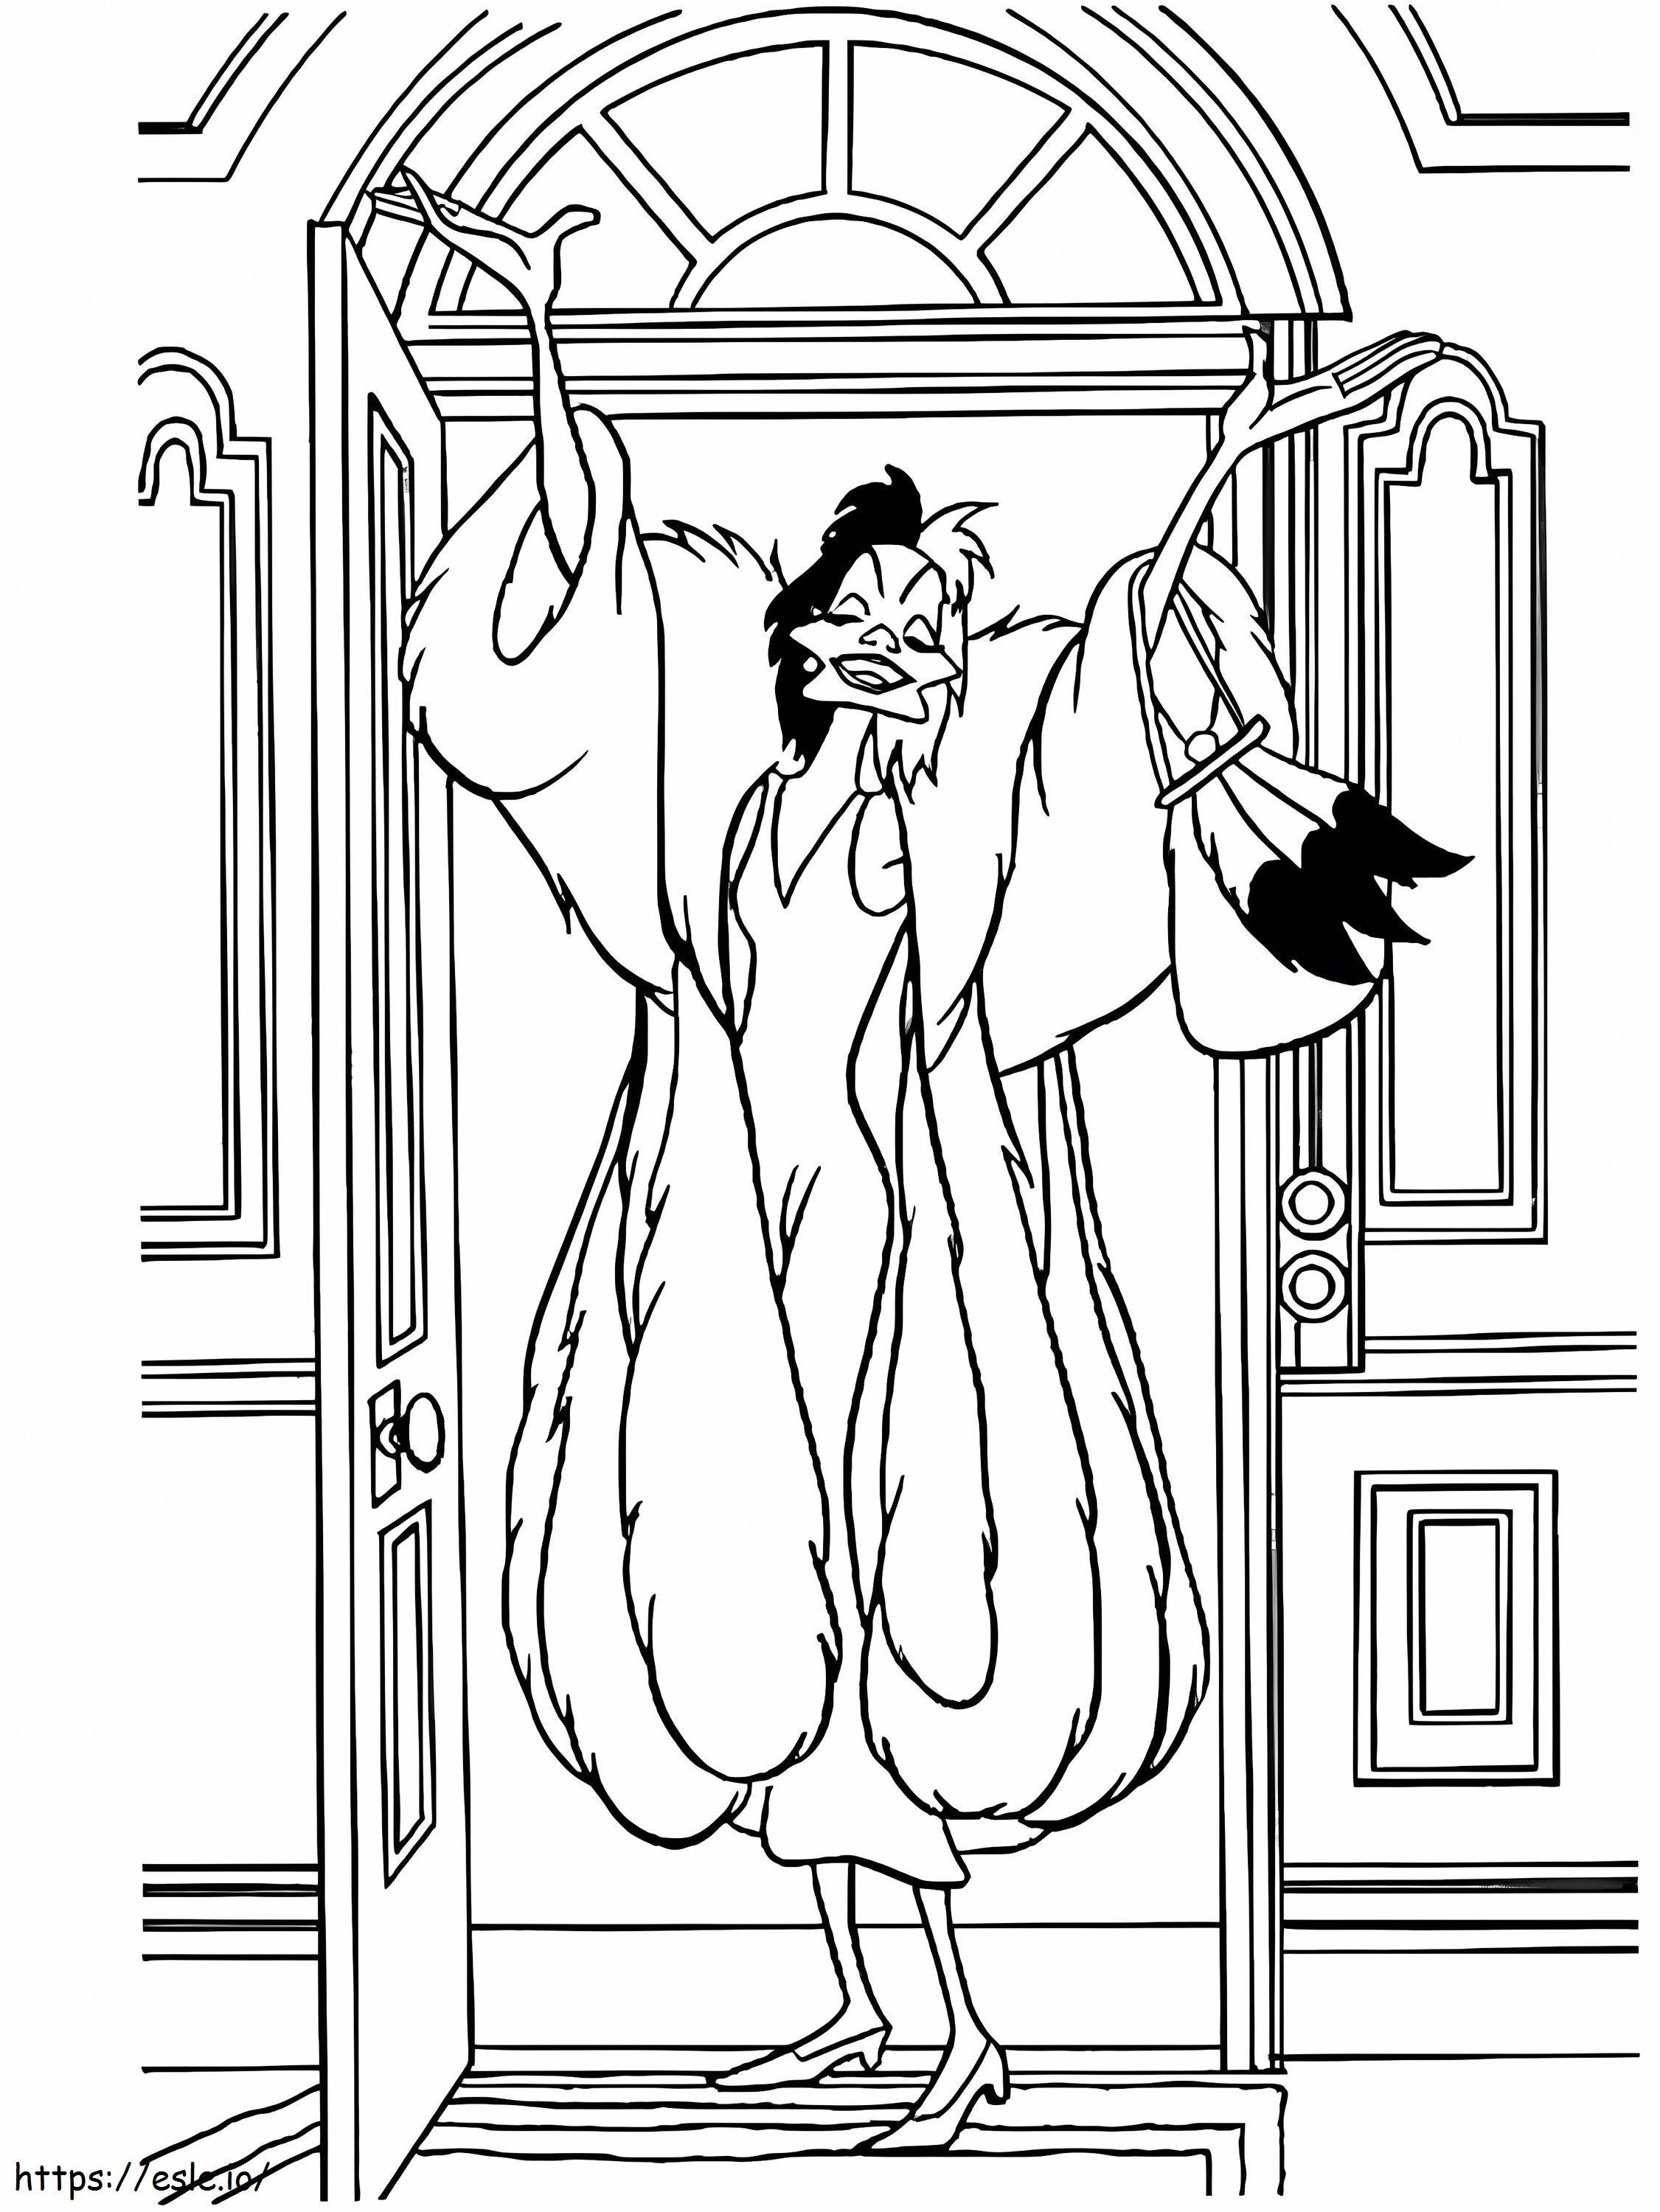 Happy Cruella De Vil coloring page